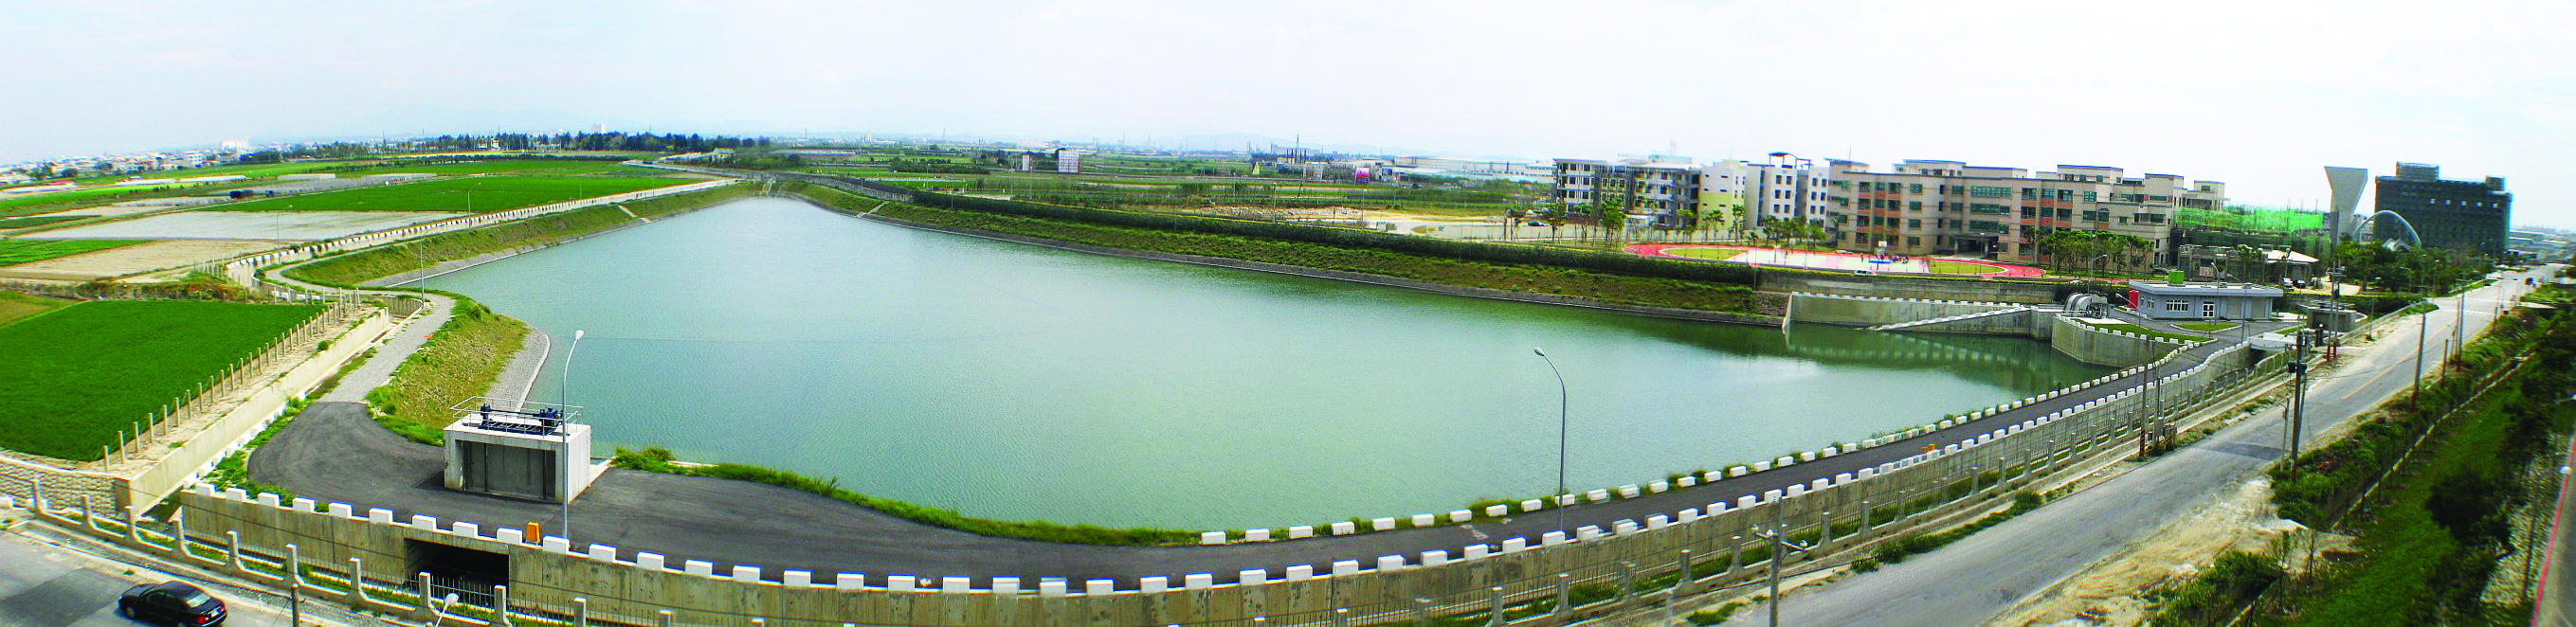 台南科學工業園區座駕排水滯洪池